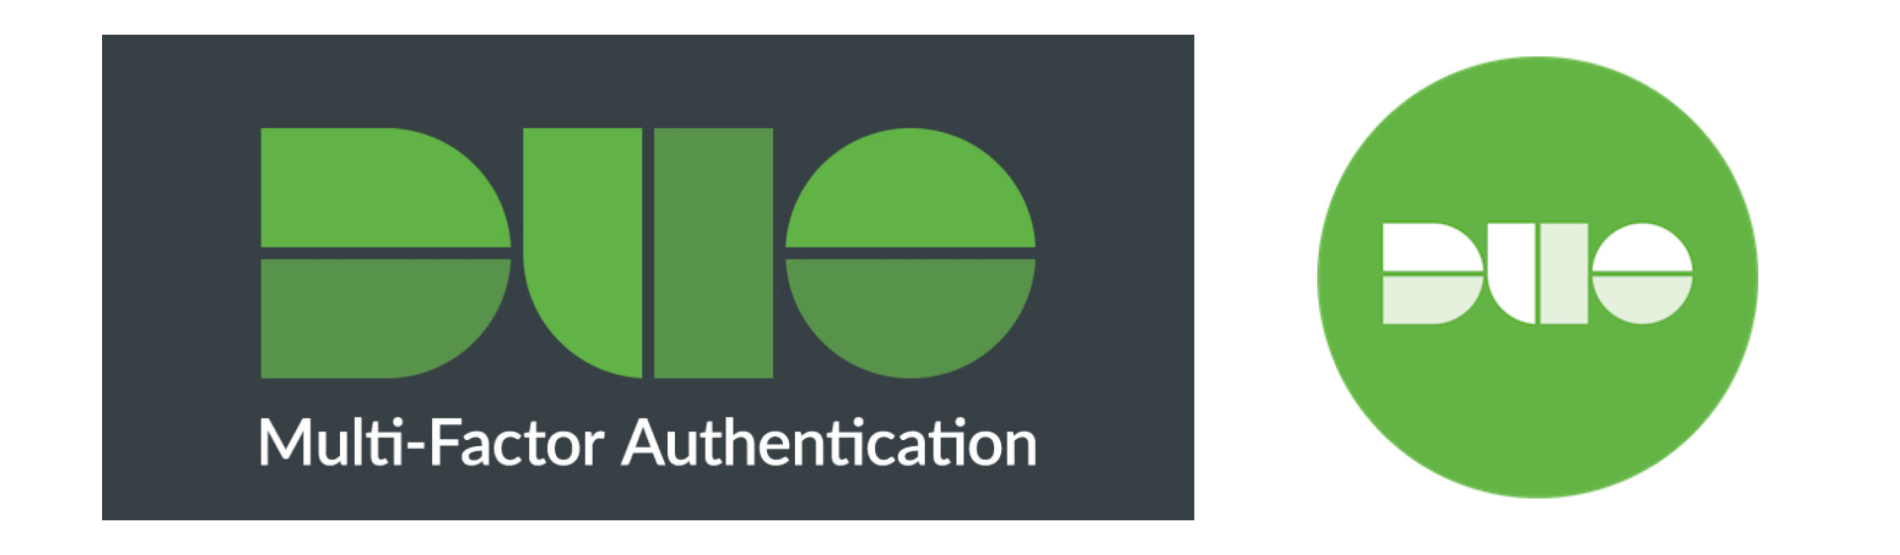 Duo Multi-Factor Authentication Logo